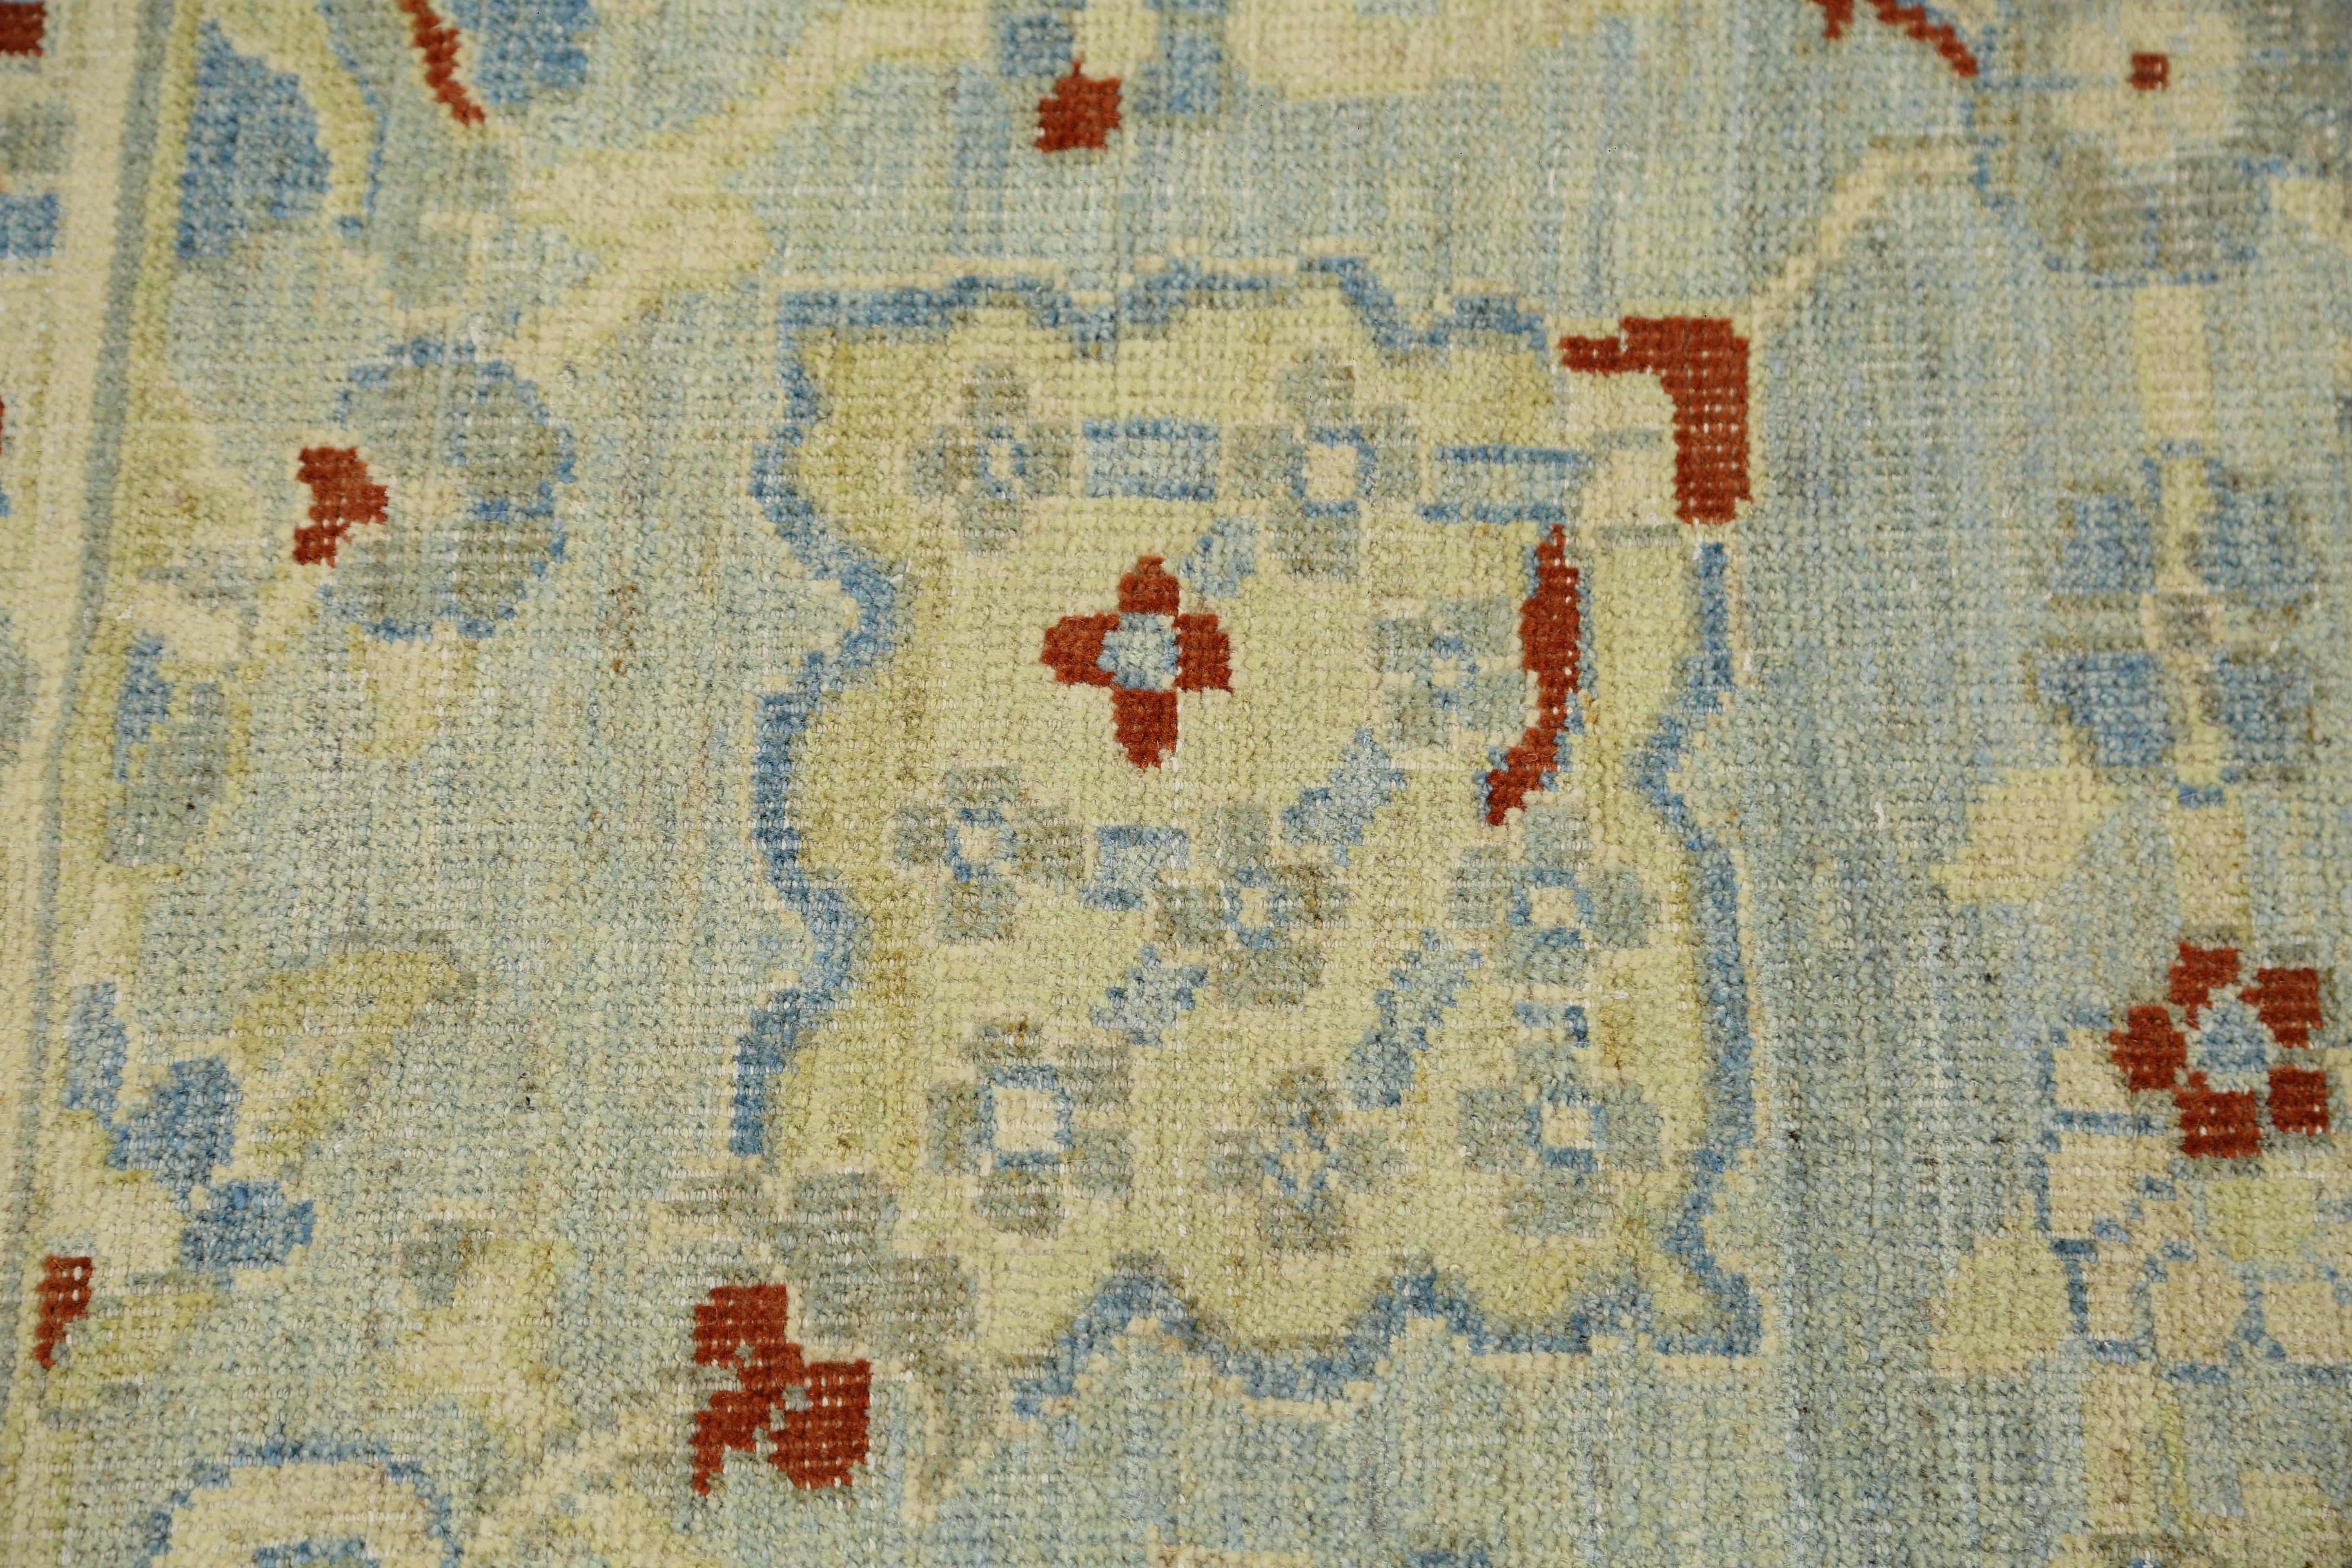 Wir stellen Ihnen unseren exquisiten türkischen Sultanabad-Teppich vor, der in sorgfältiger Handarbeit hergestellt wird. Mit den Maßen 7'0'' x 10'0'' bietet dieses atemberaubende Stück einen fesselnden blauen Hintergrund, der mit satten, dunkelroten